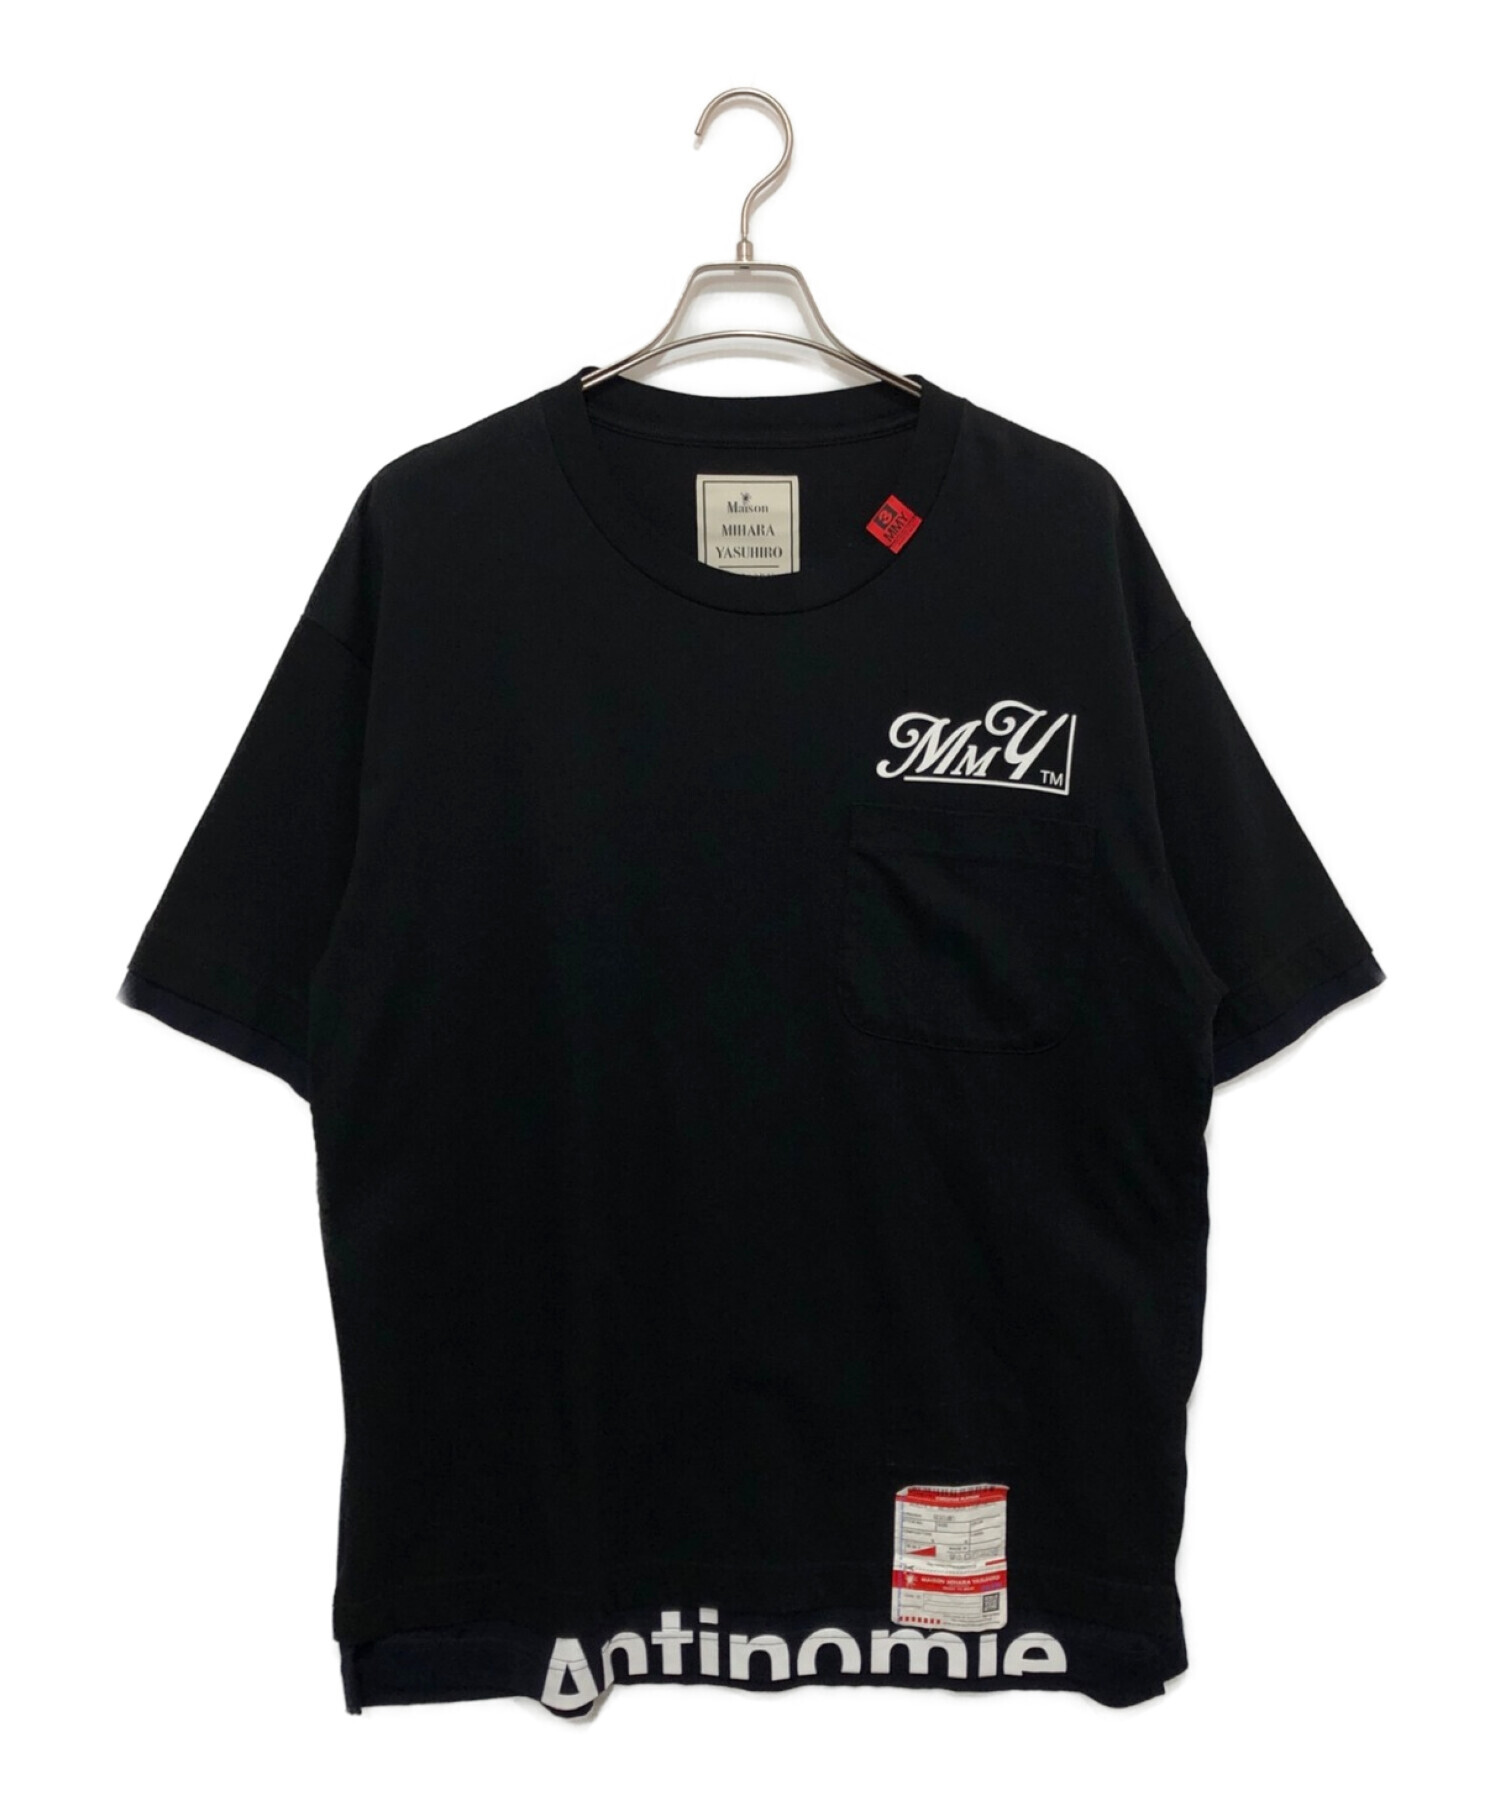 Maison MIHARA YASUHIRO (メゾン ミハラ ヤスヒロ) Layerd T-shirt ブラック サイズ:48